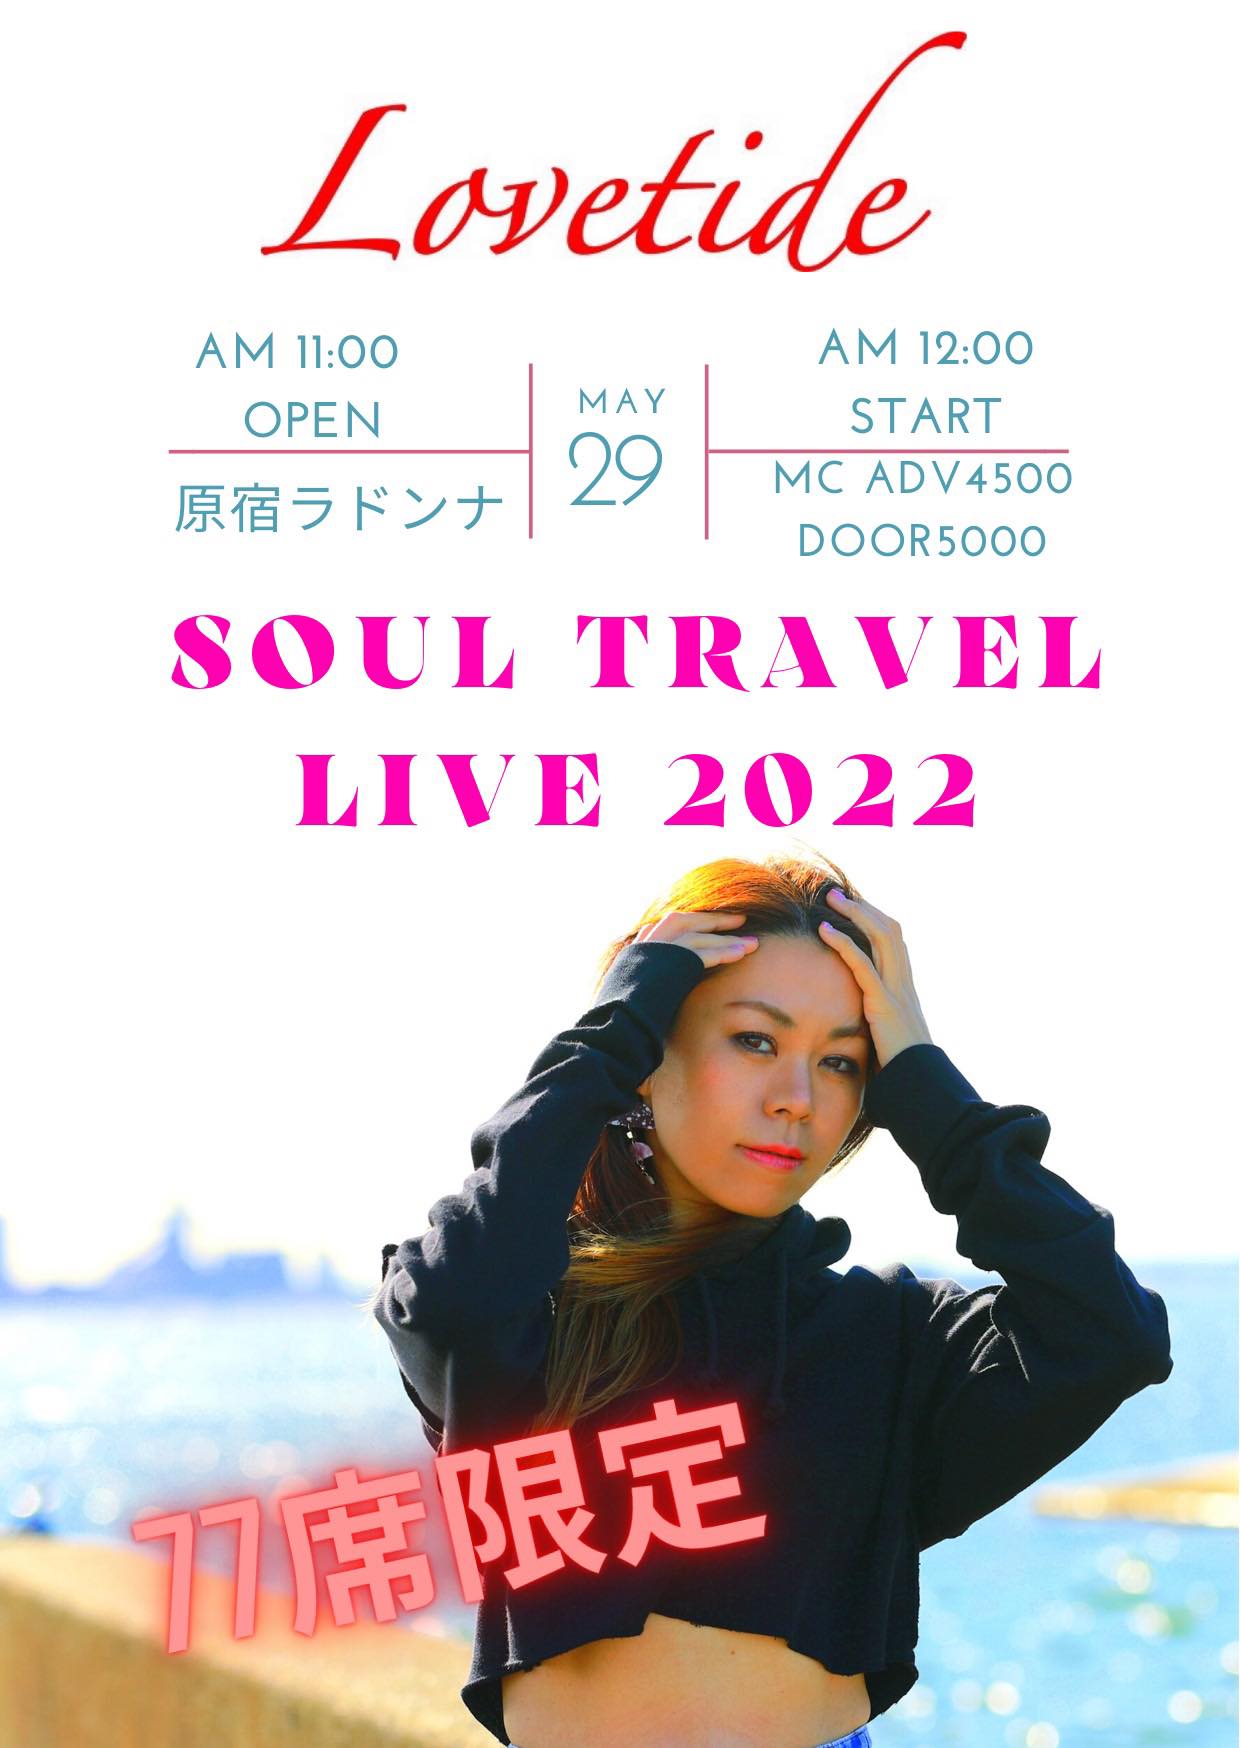 Lovetide SOUL TRAVEL LIVE 2022